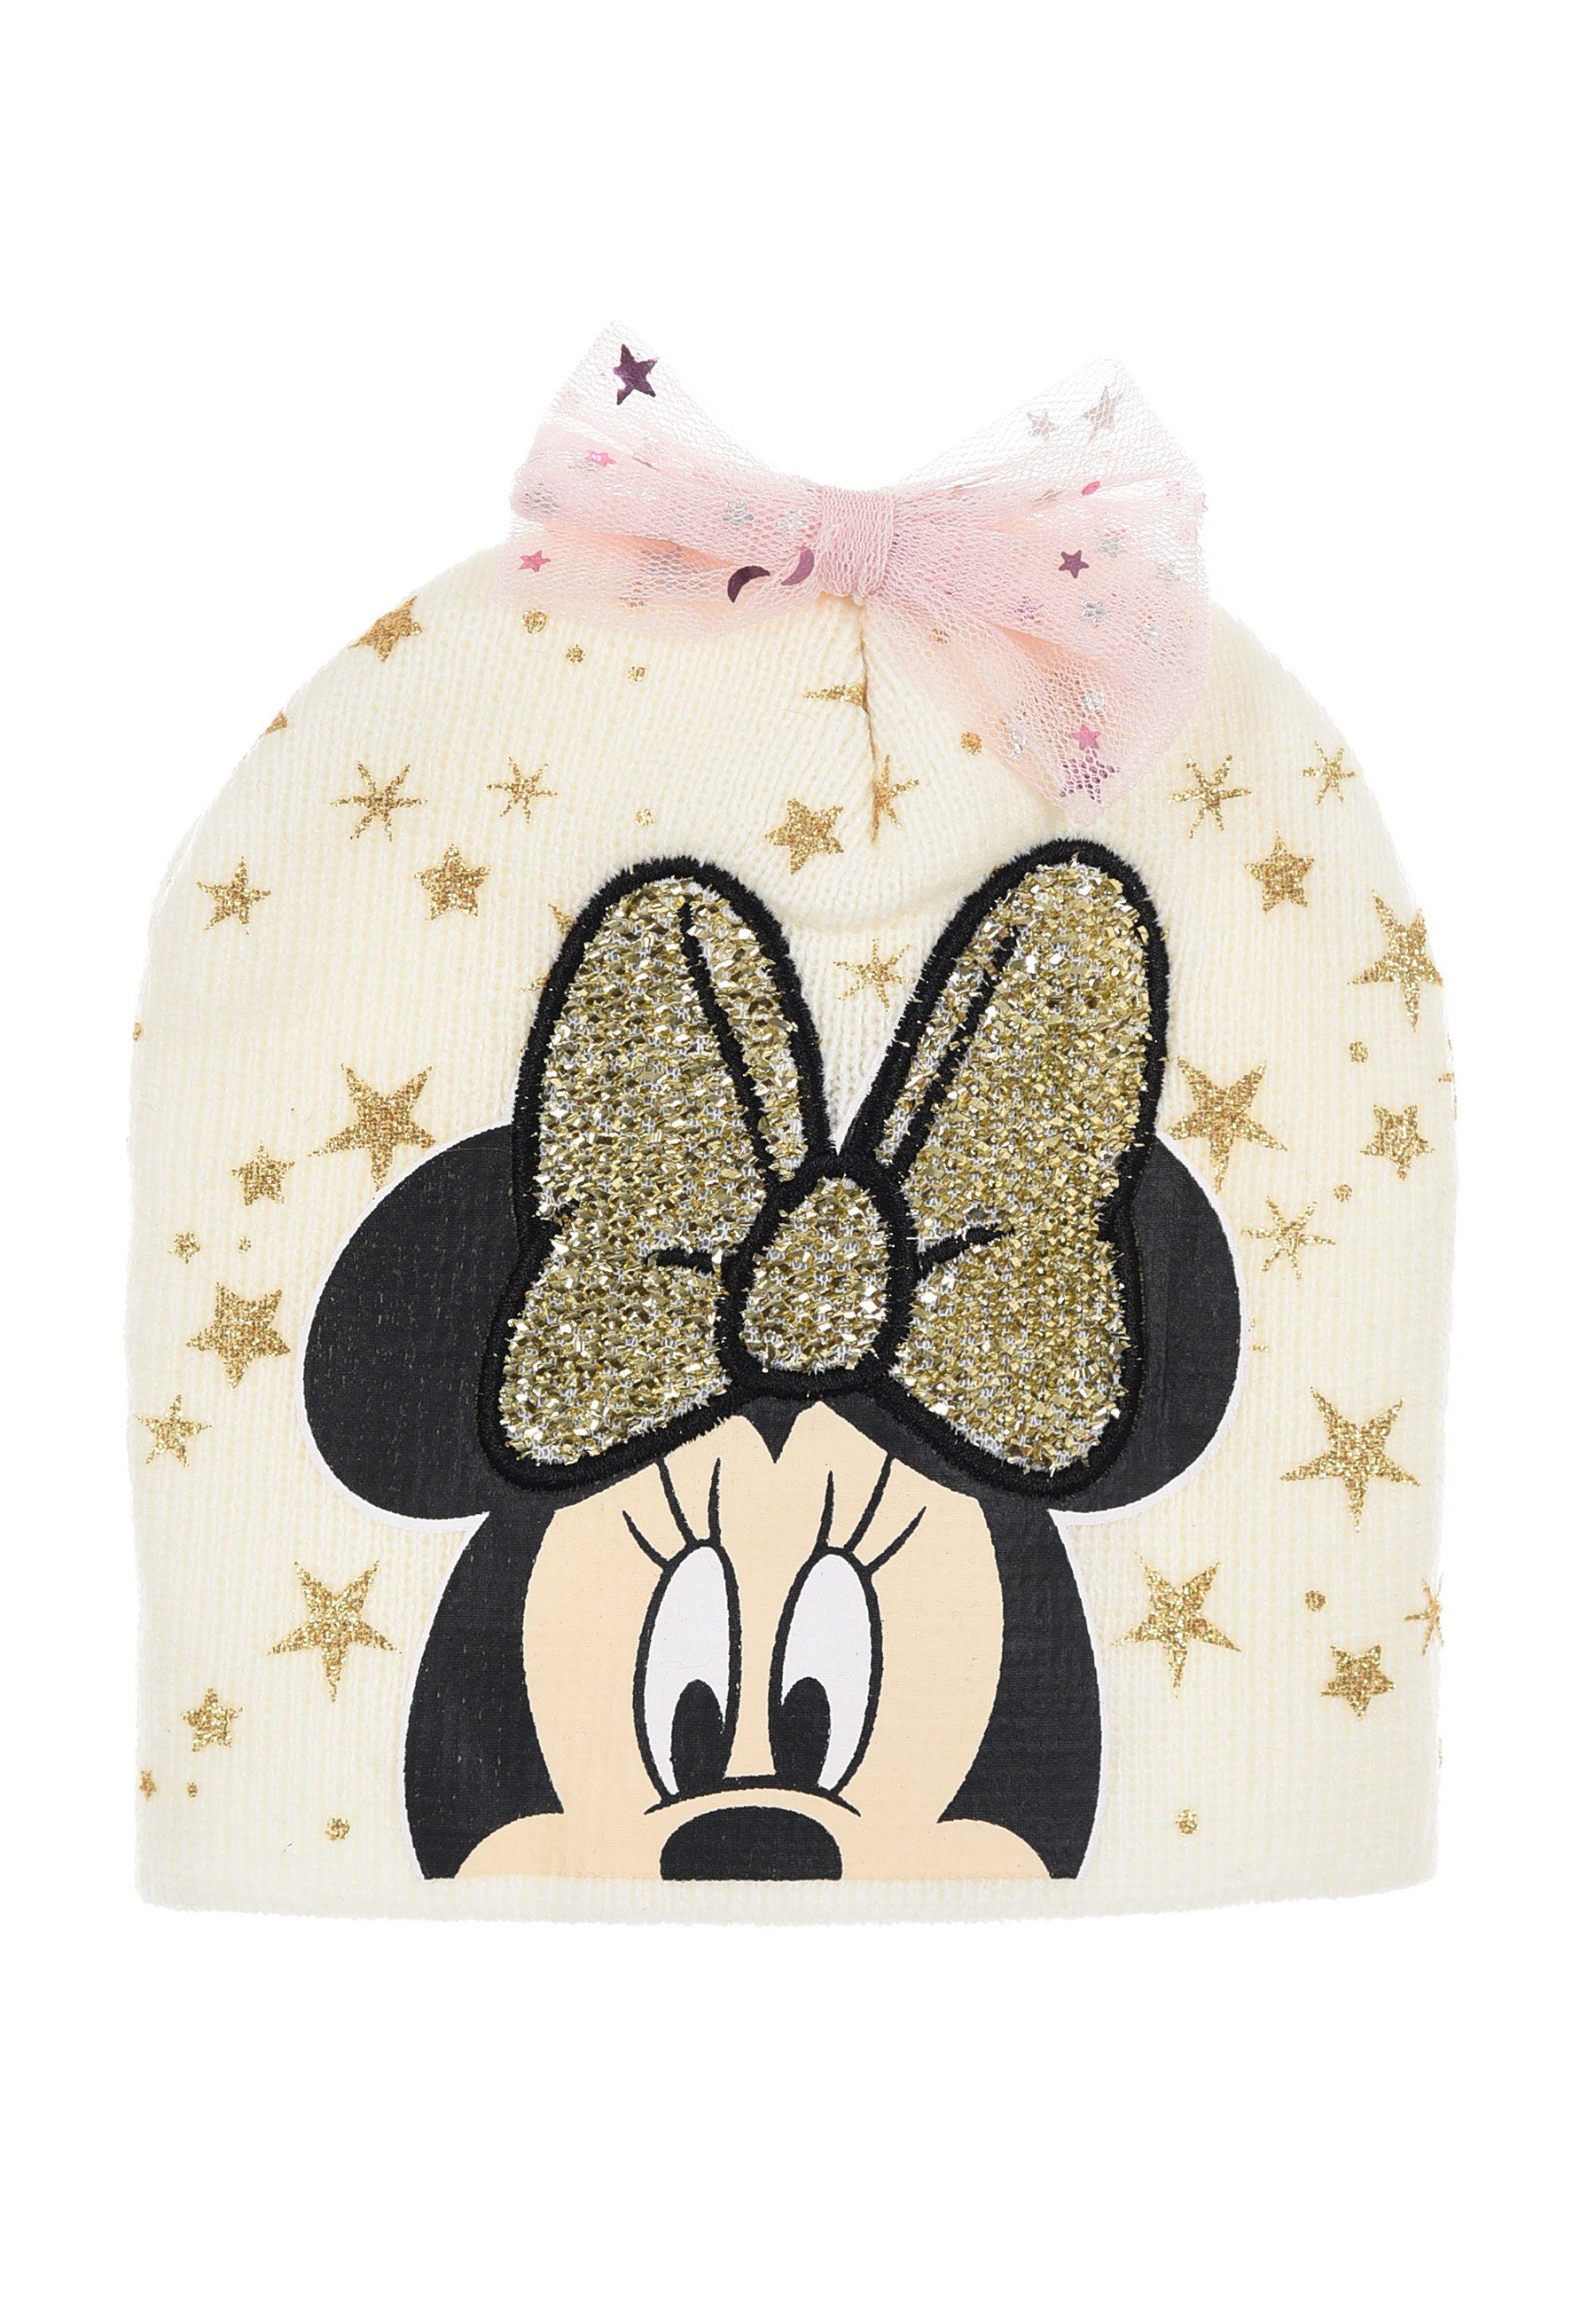 Mütze Beanie Baby Mädchen Weiß Winter-Mütze Minnie Disney Mouse Strick